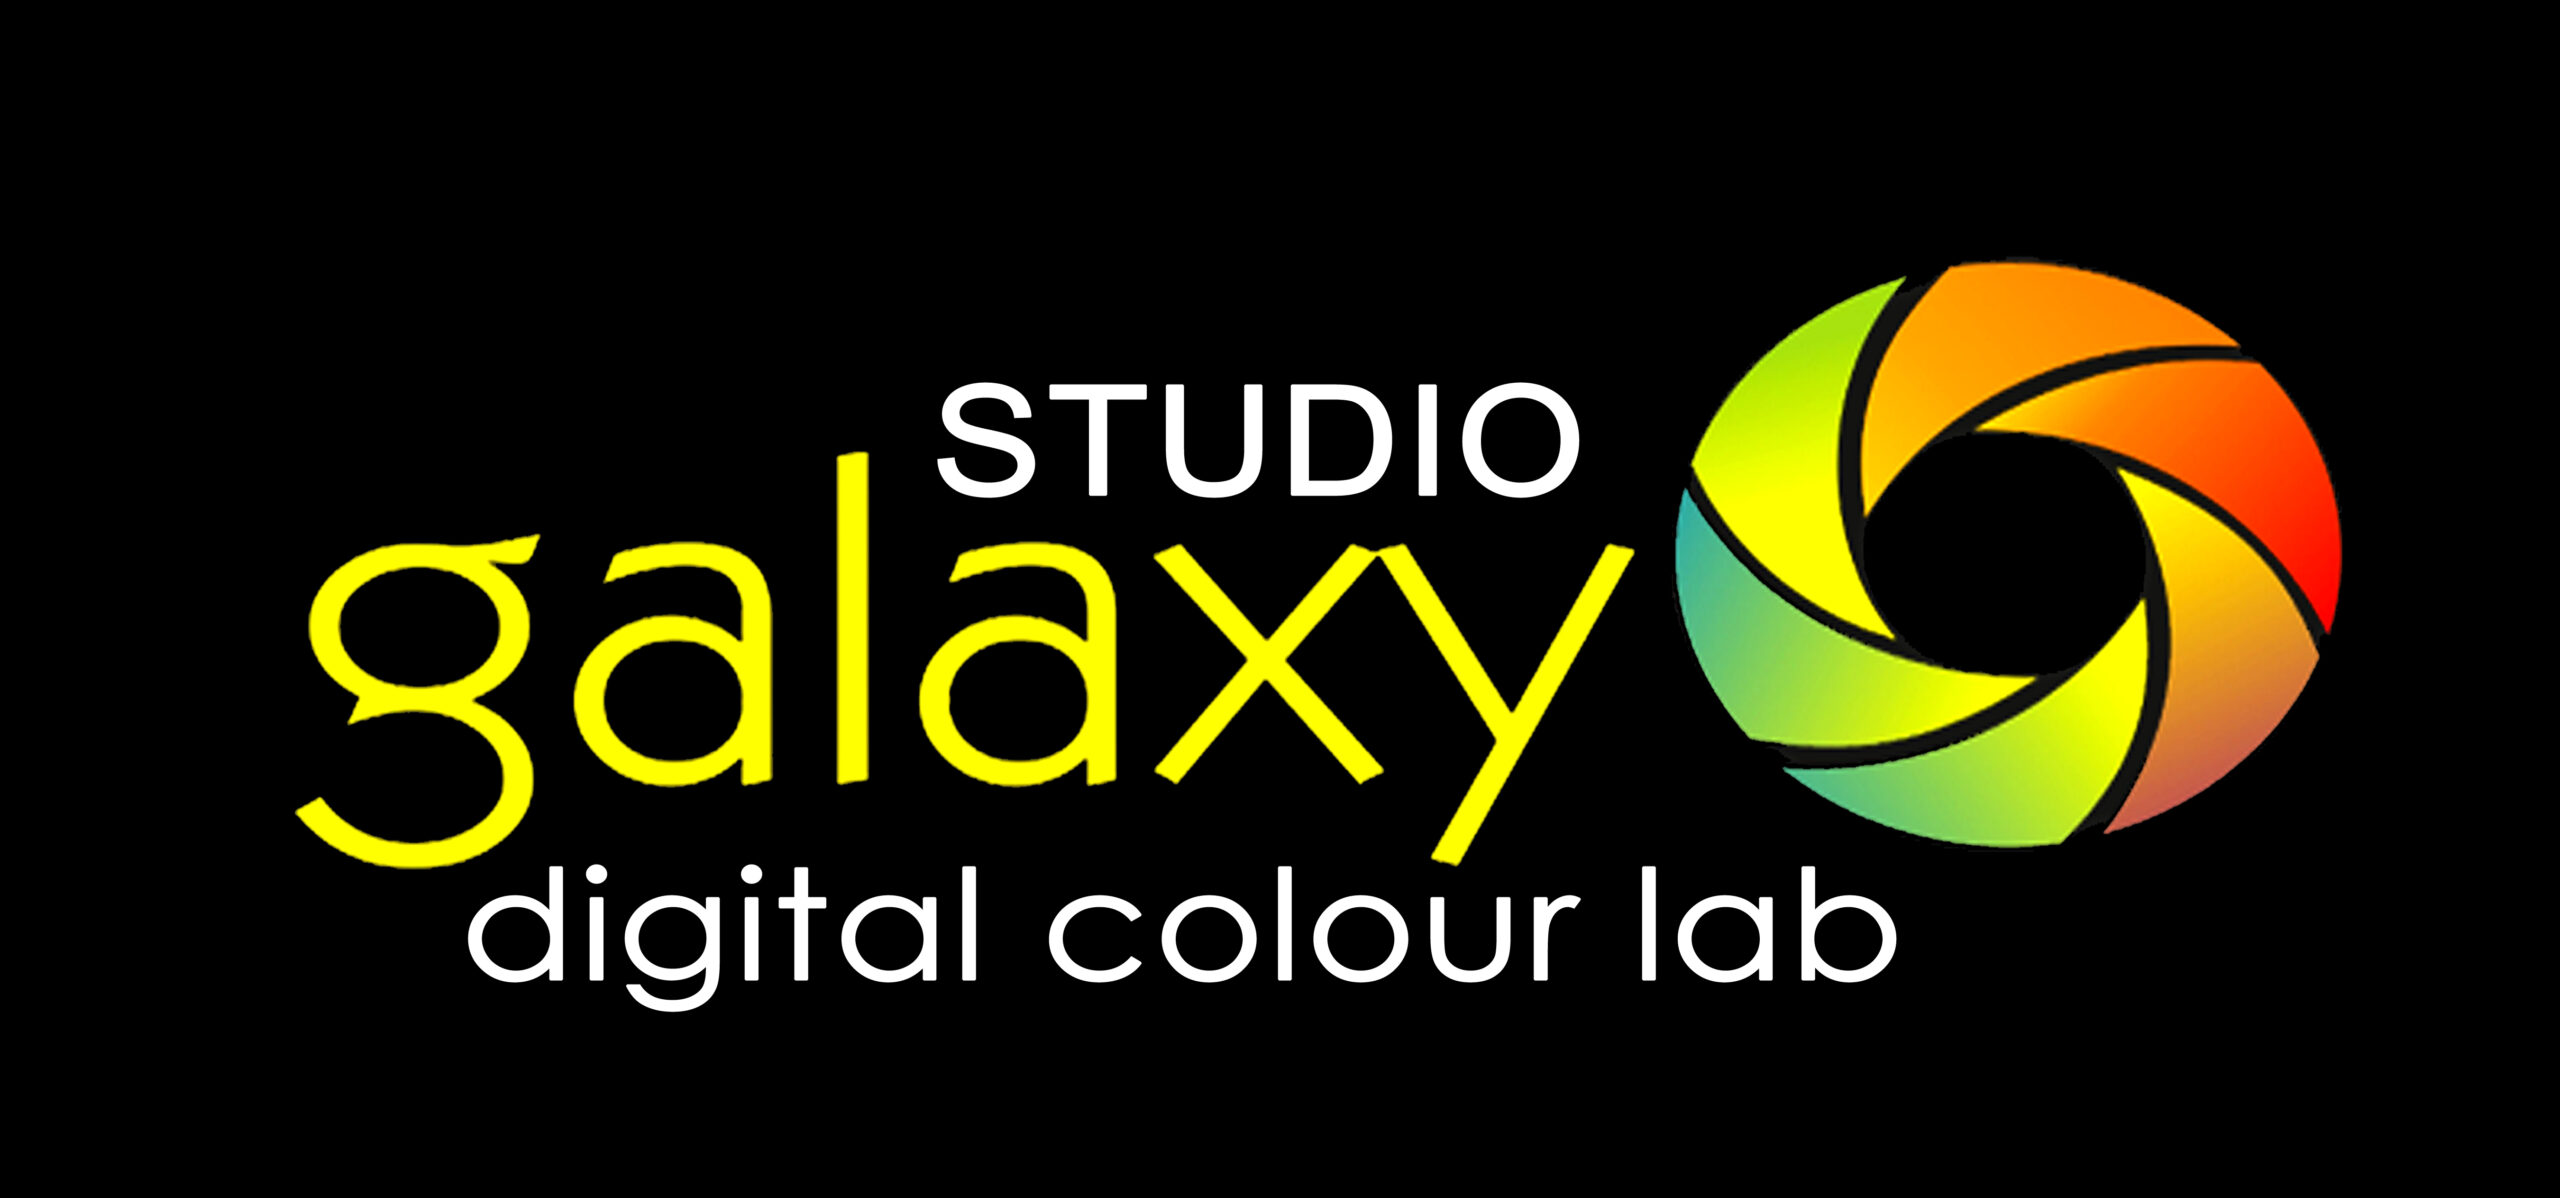 Studio Galaxy